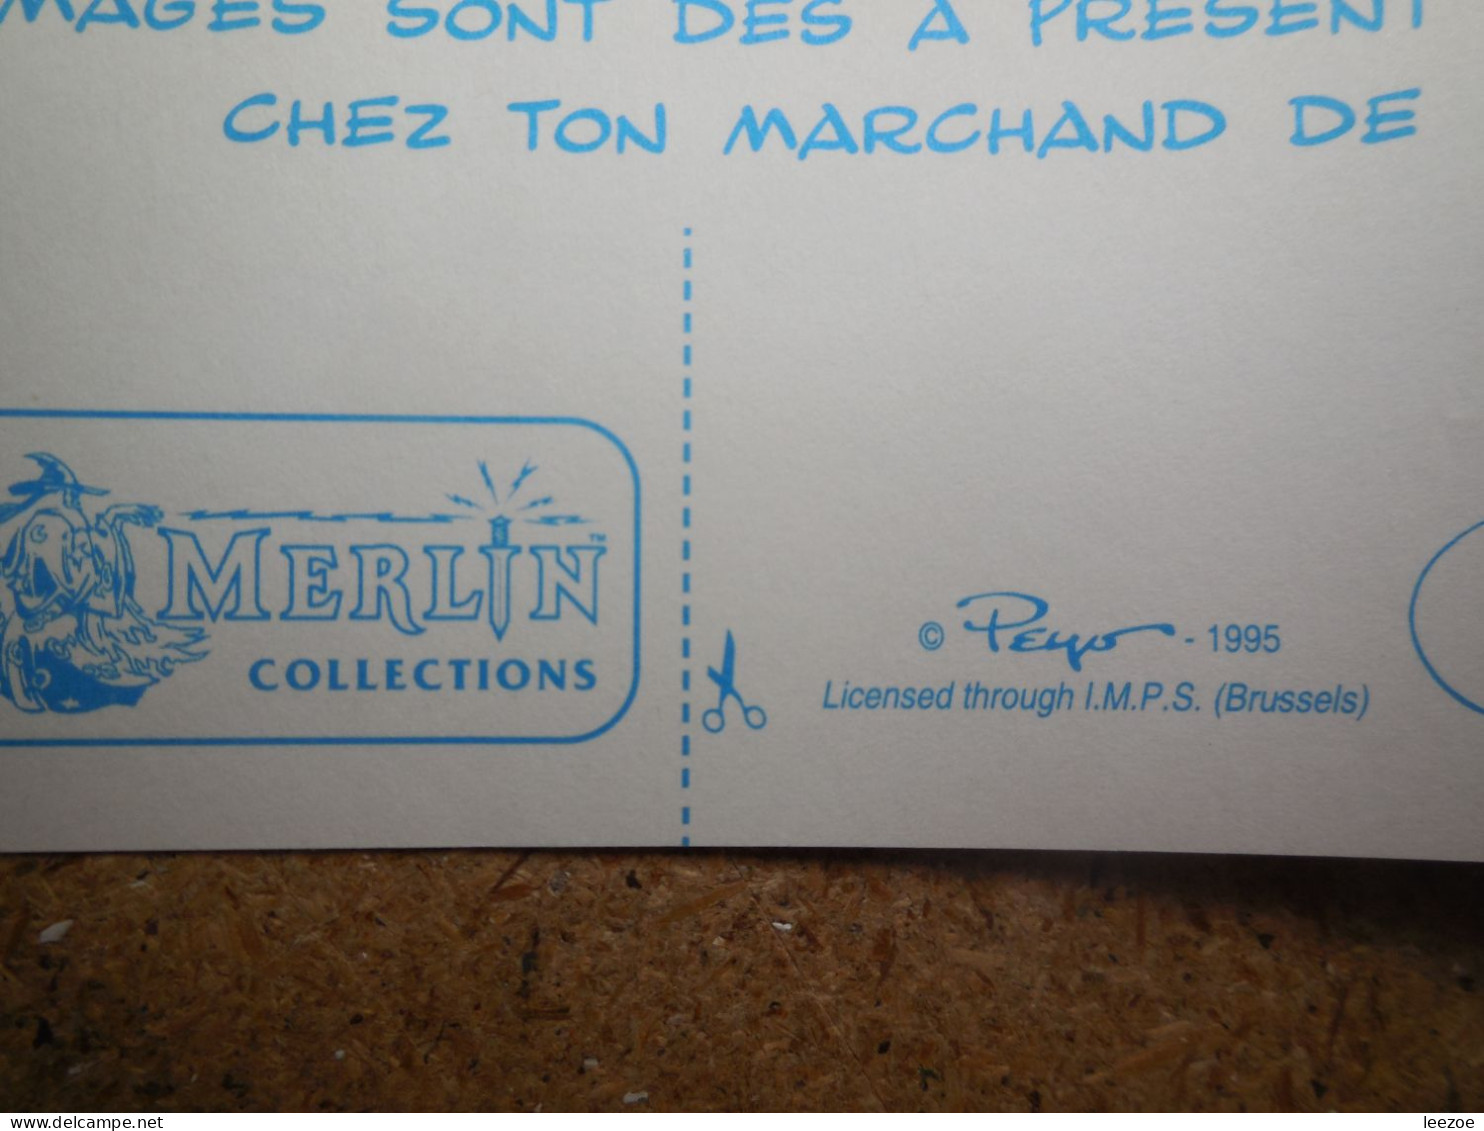 Objets Dérivés BD Les Schtroumpfs, DE SMURFEN, Autocollants, Stickers Peyo 1995 Par Merlin Collection, I.M.P.S BRUSSELS. - Adesivi